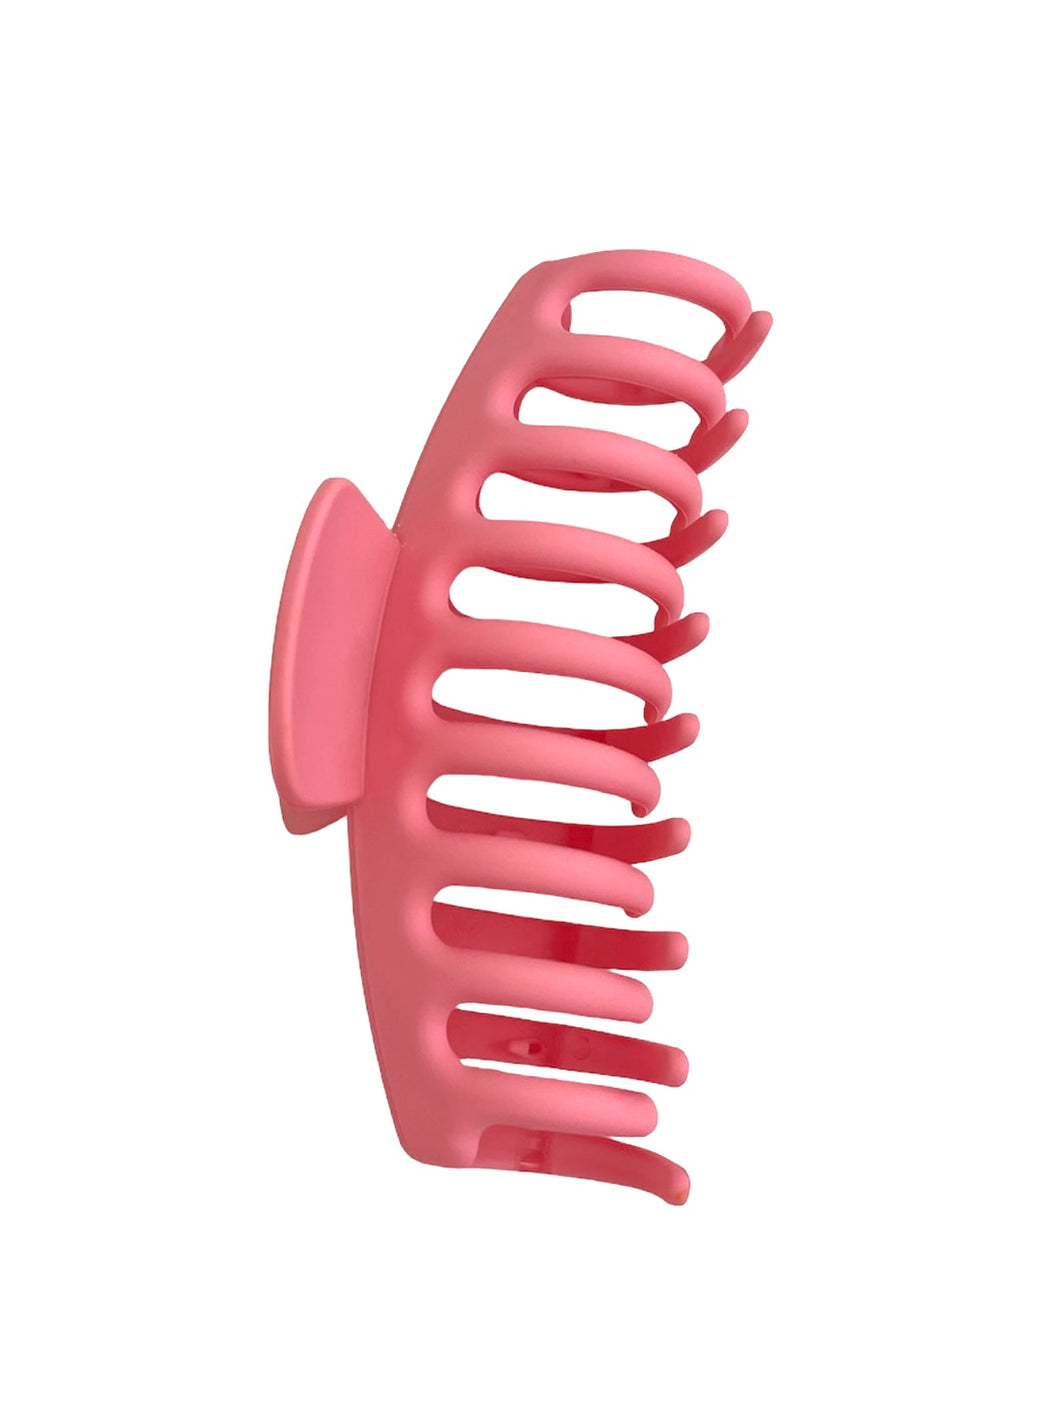 Mitylene Hair Claw Clip in Bubblegum Pink